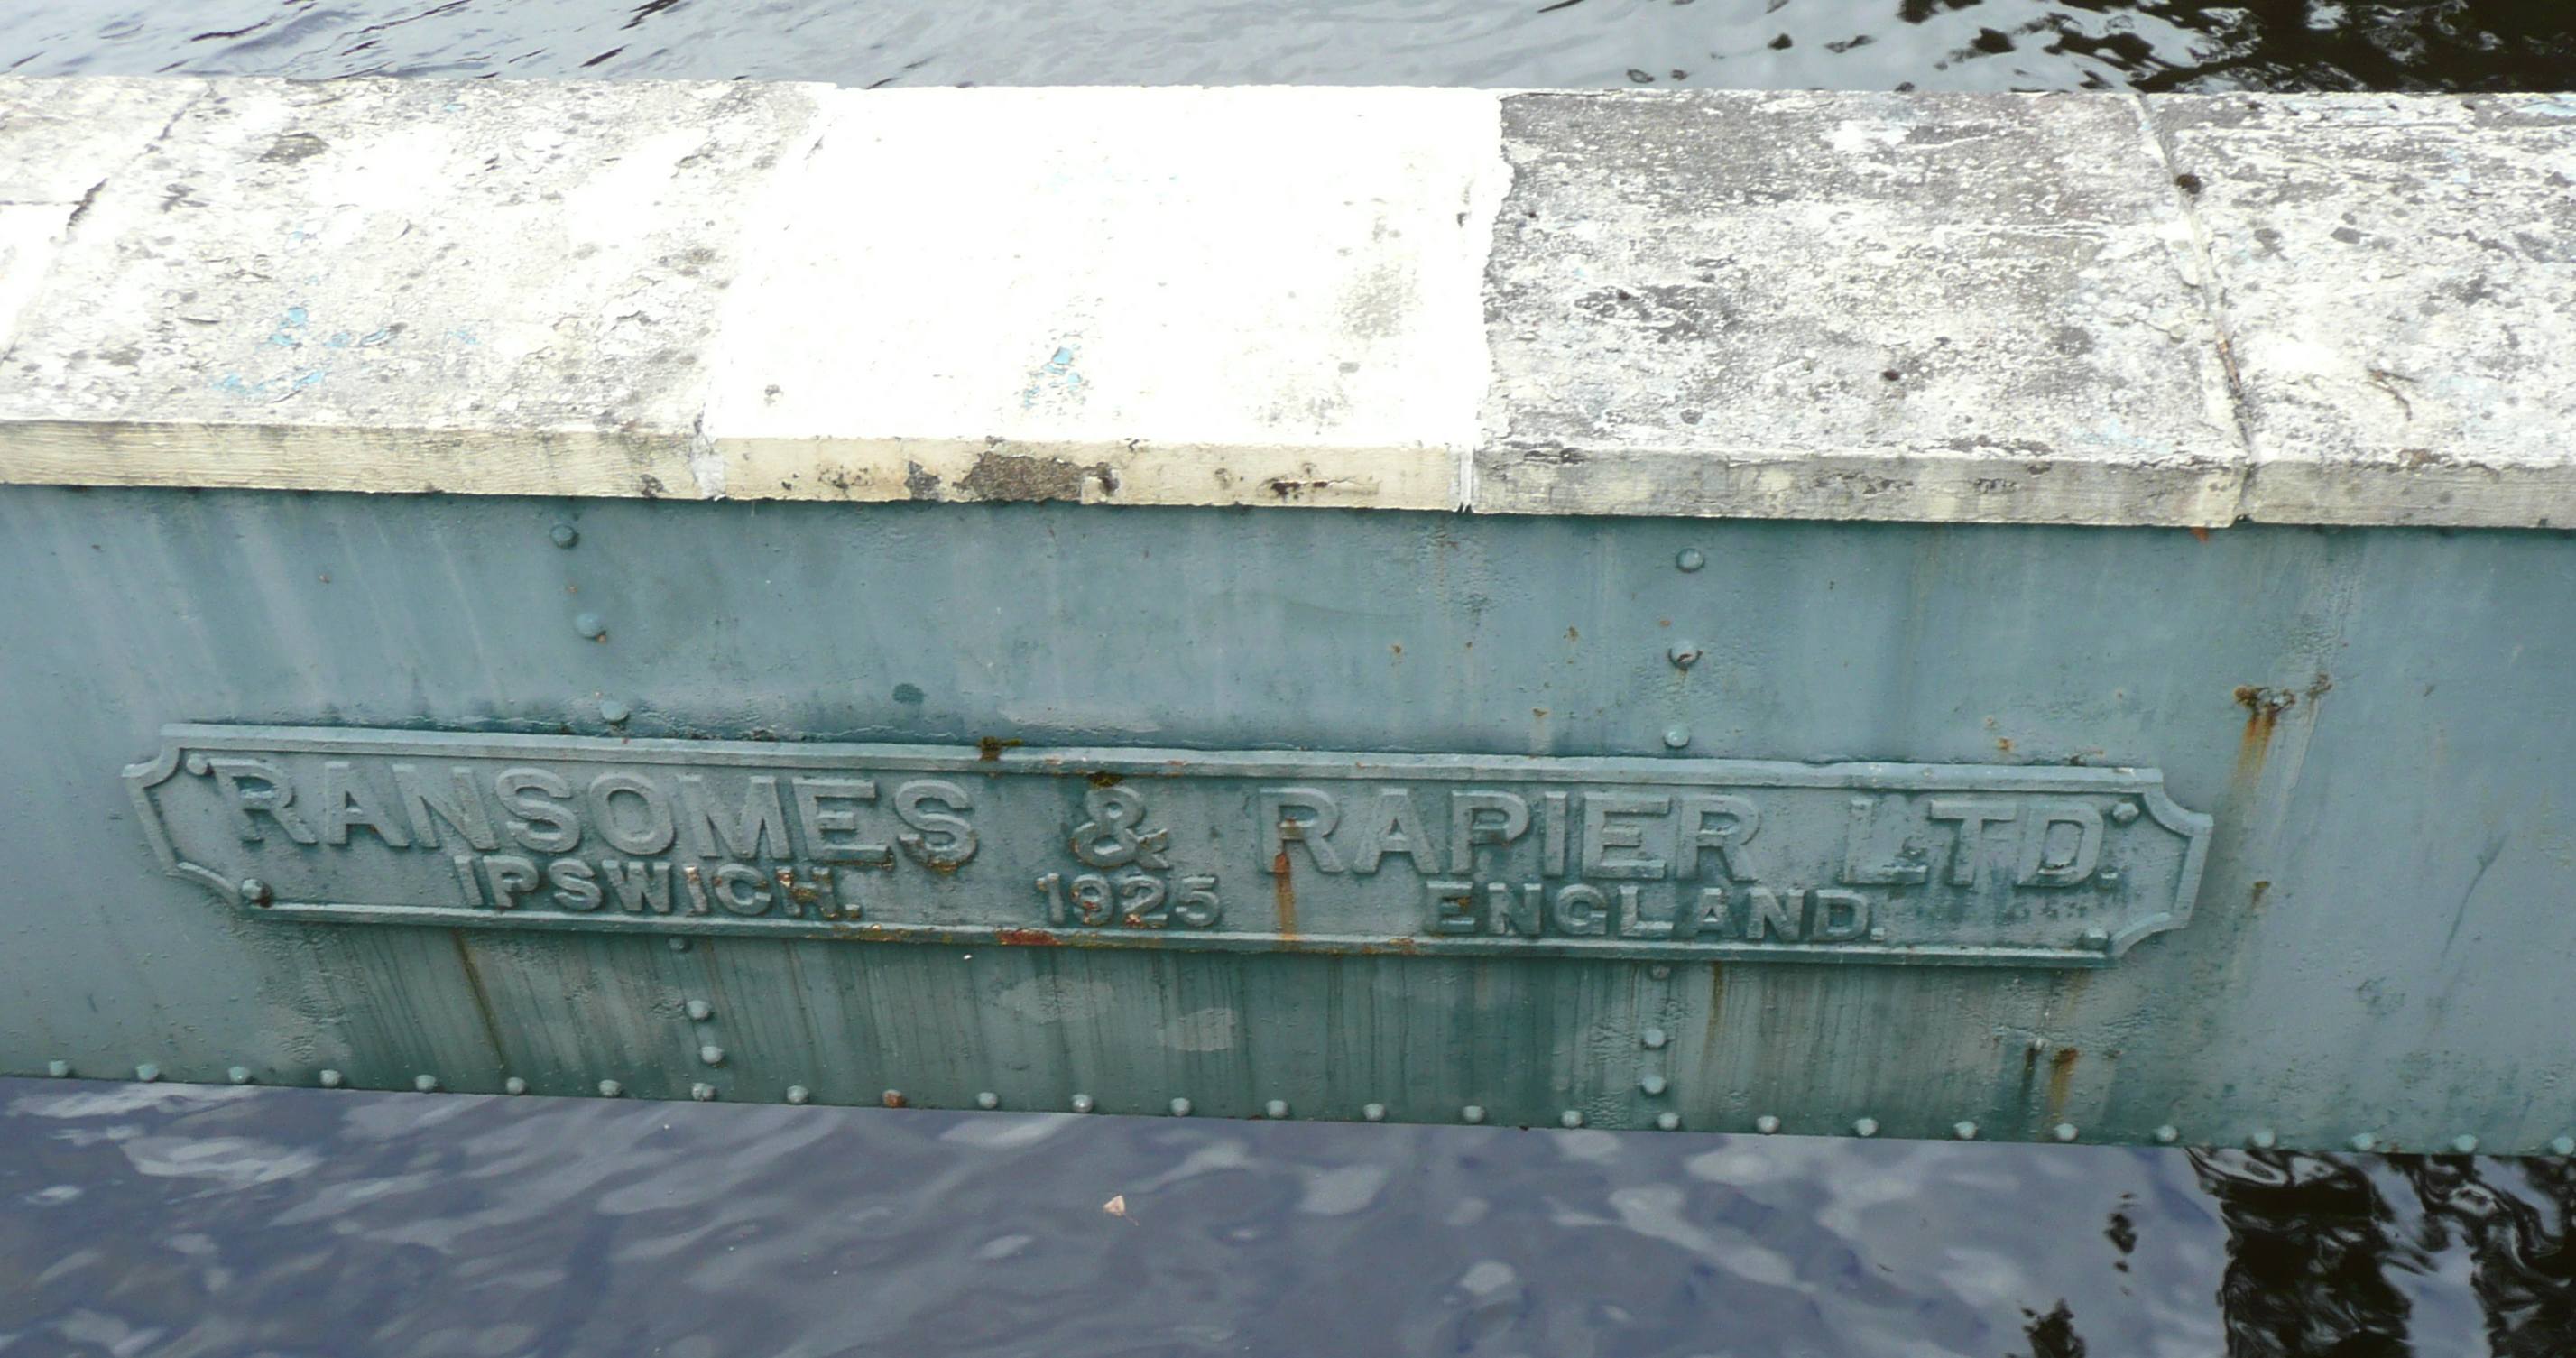 Plaque on sluice gates at Bonnington Weir